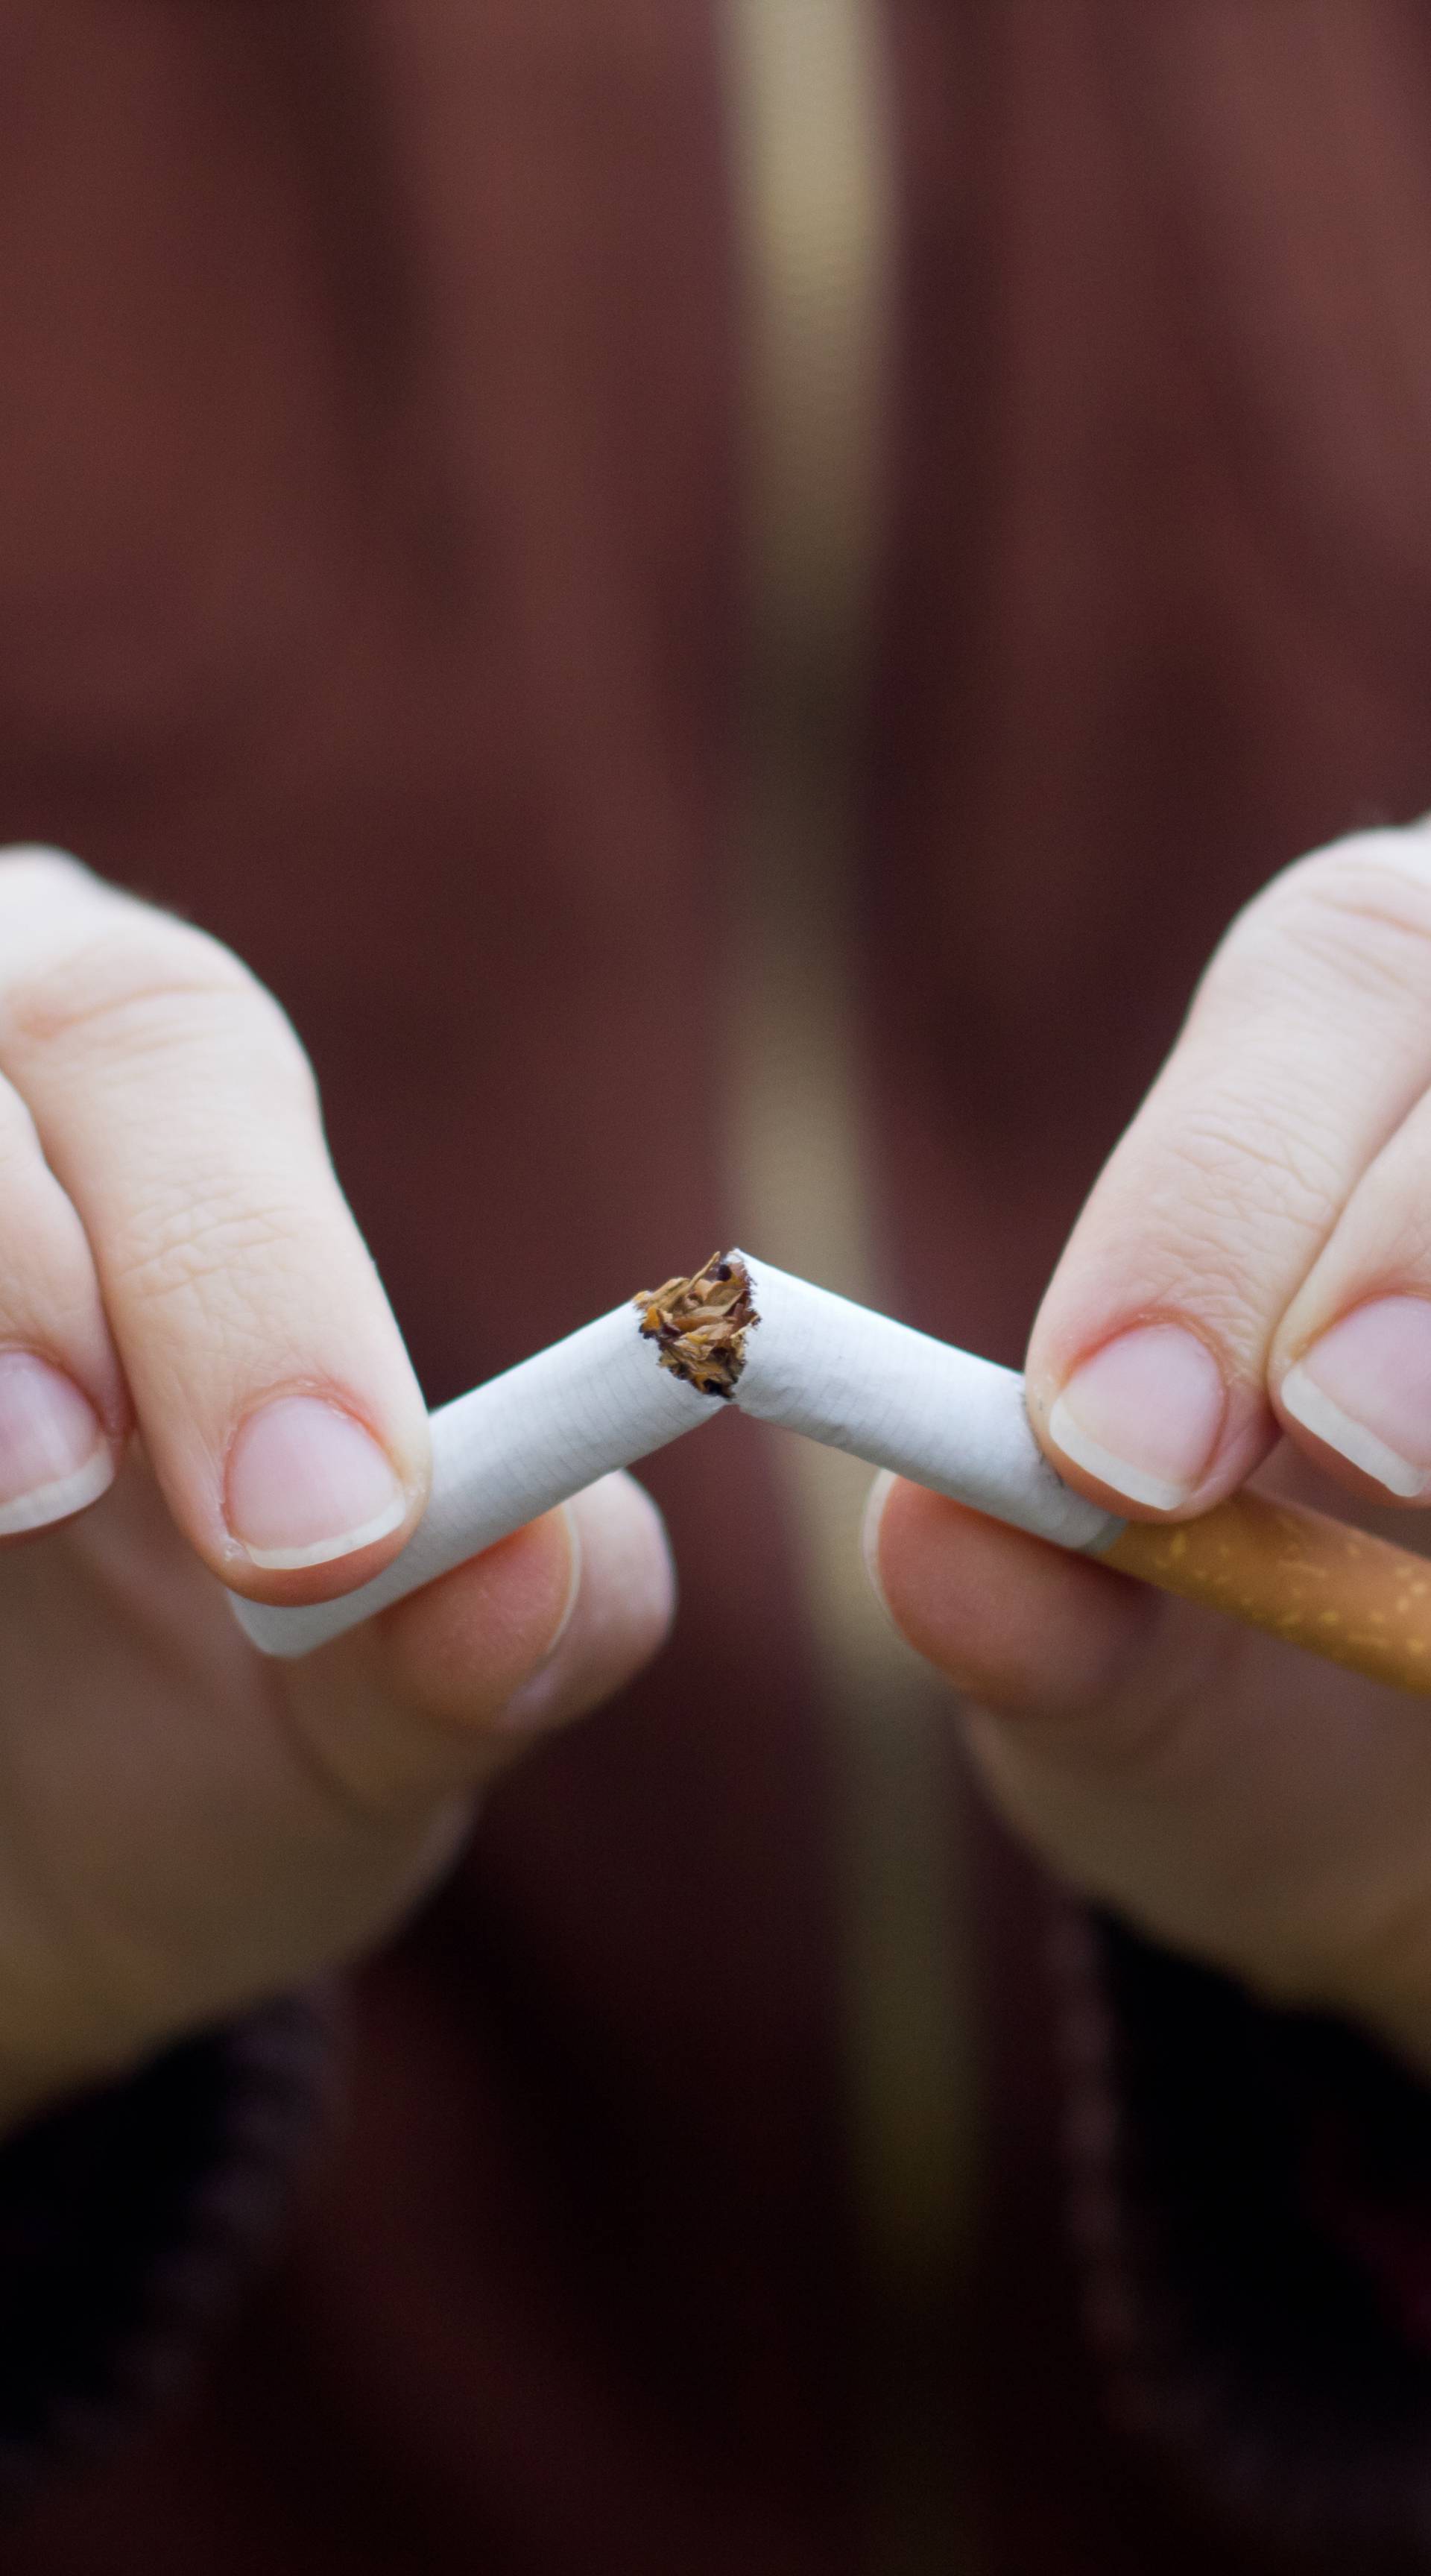 Stručnjaci: Nikotinska ovisnost jača je od kokainske i heroinske